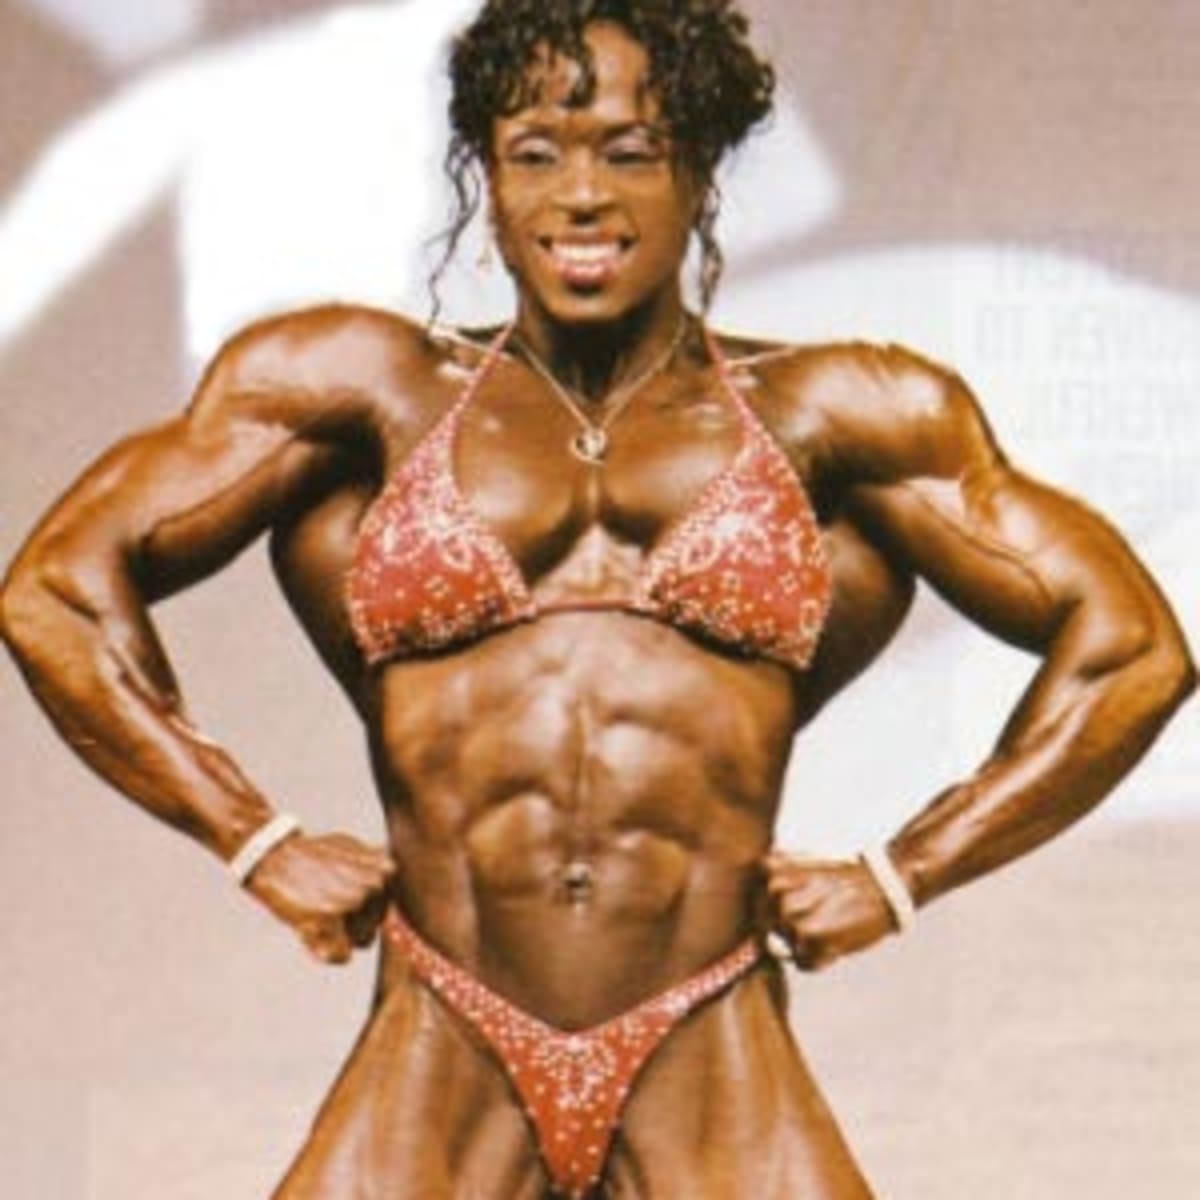 Female Bodybuilding picture picture